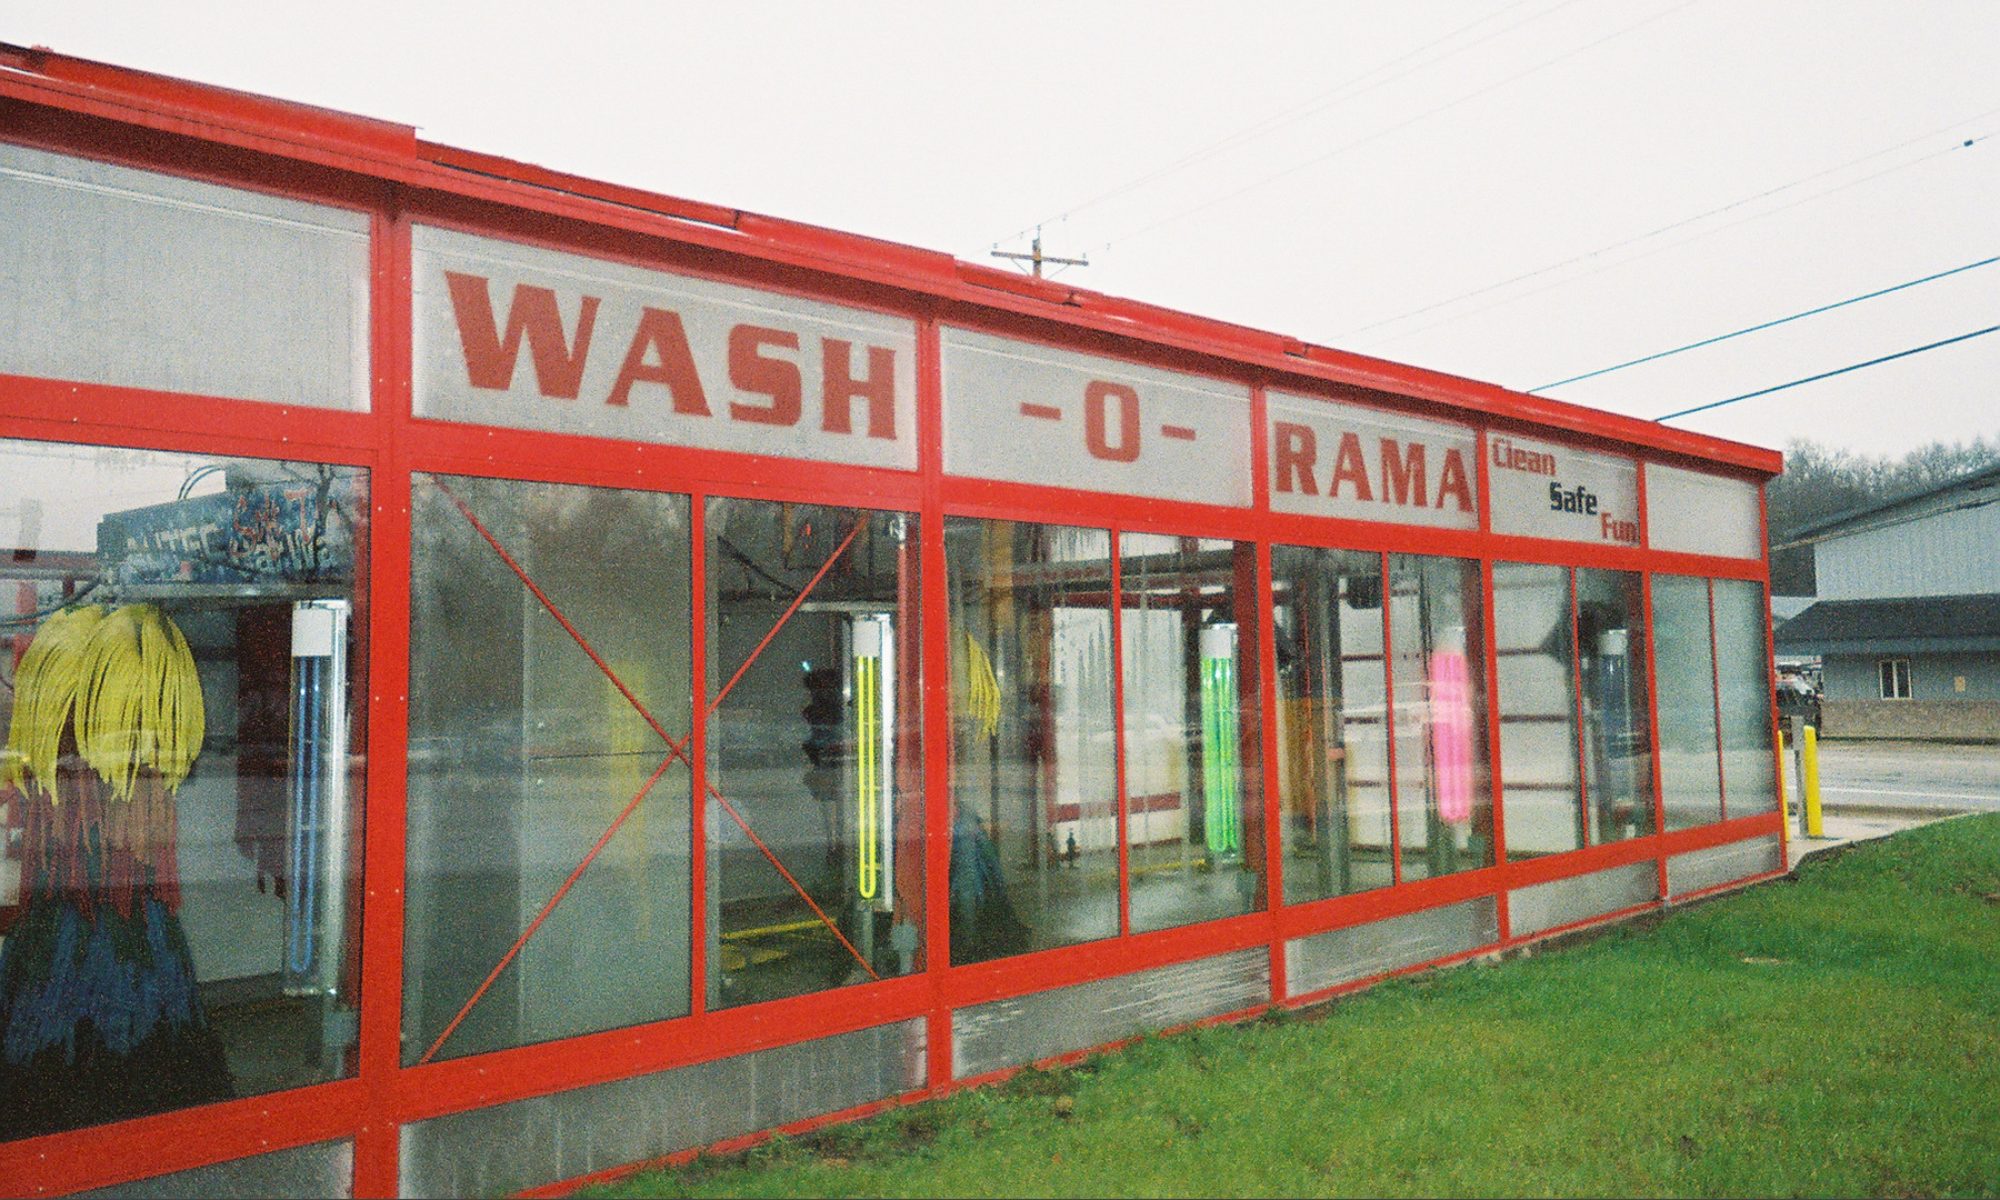 Wash o rama car wash